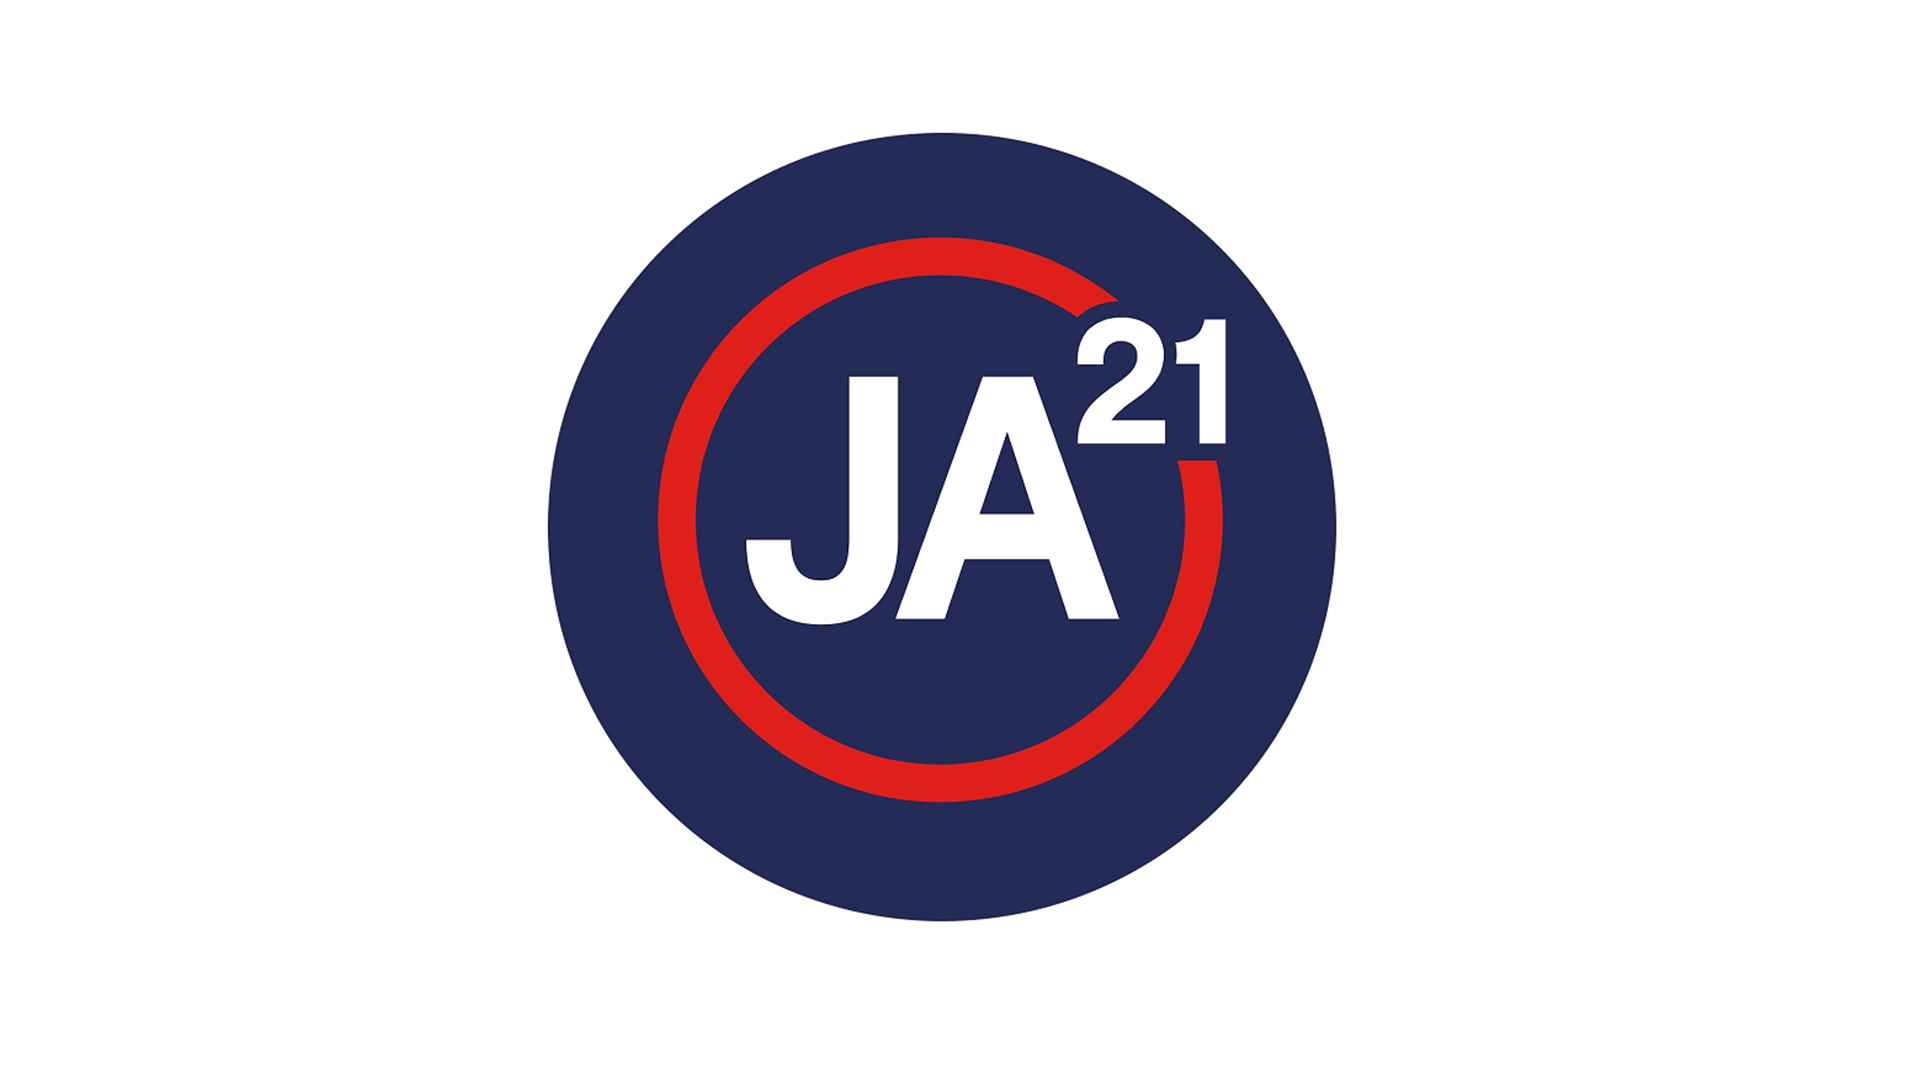 Ja21 logo